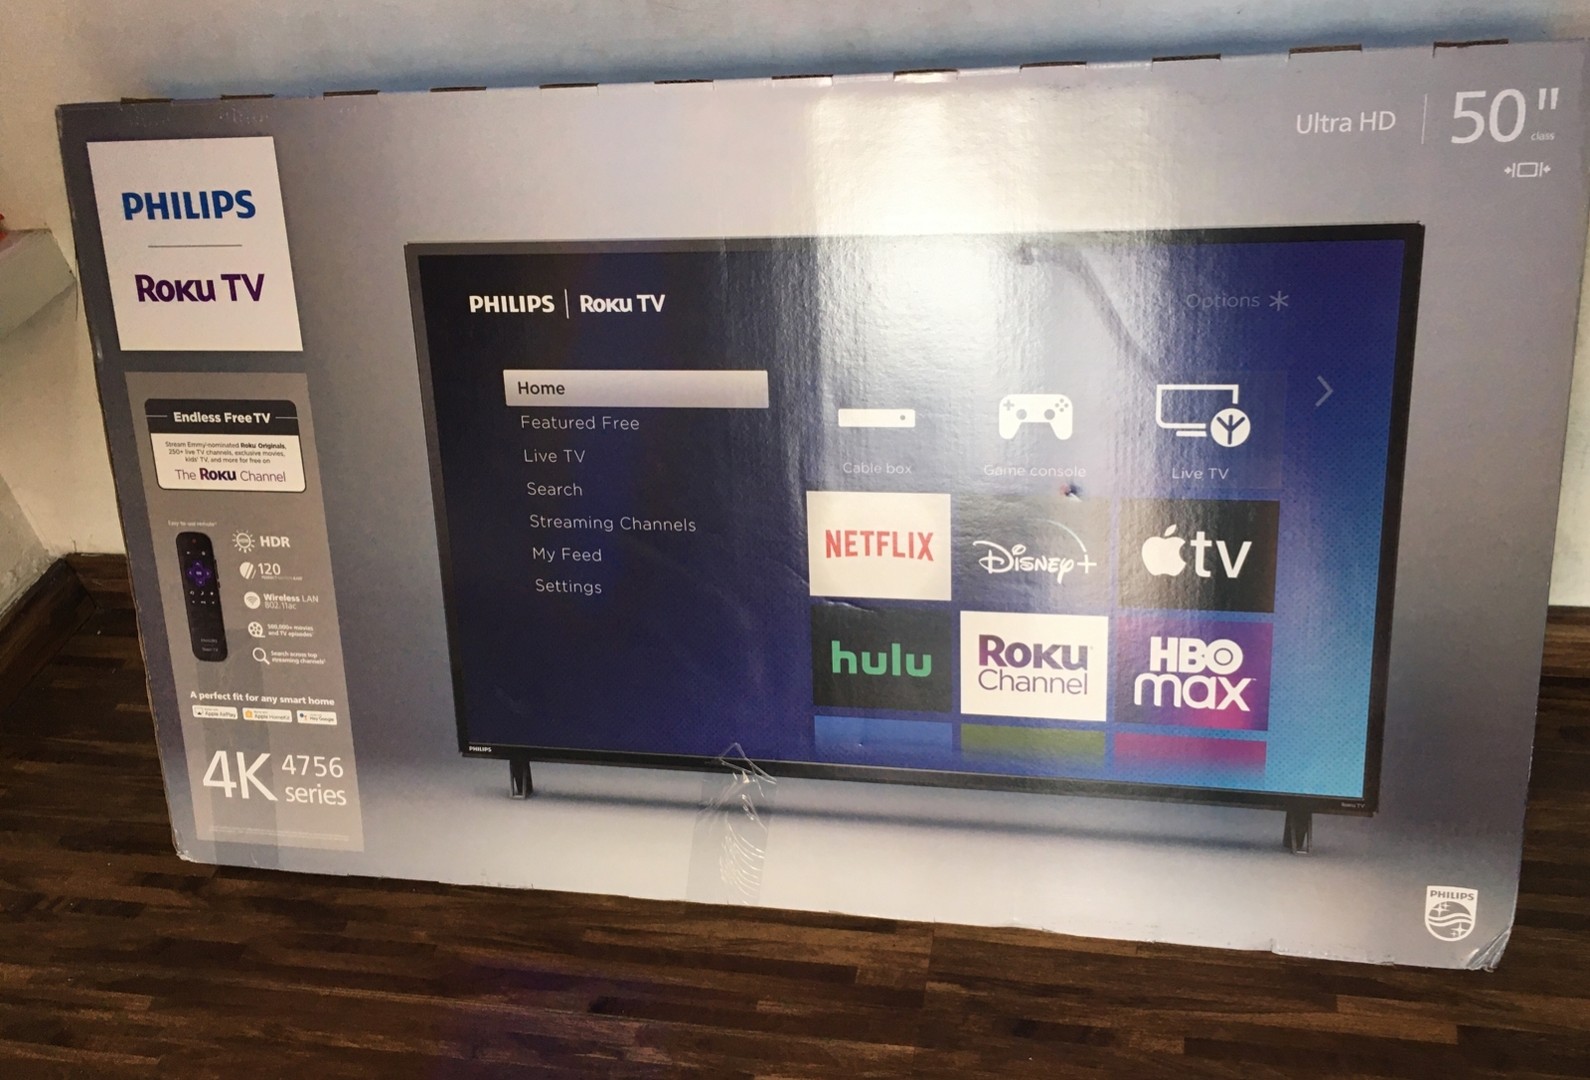 televisor philips smart tv de 50pulgadas ultras hd 4K nueva en caja sellada